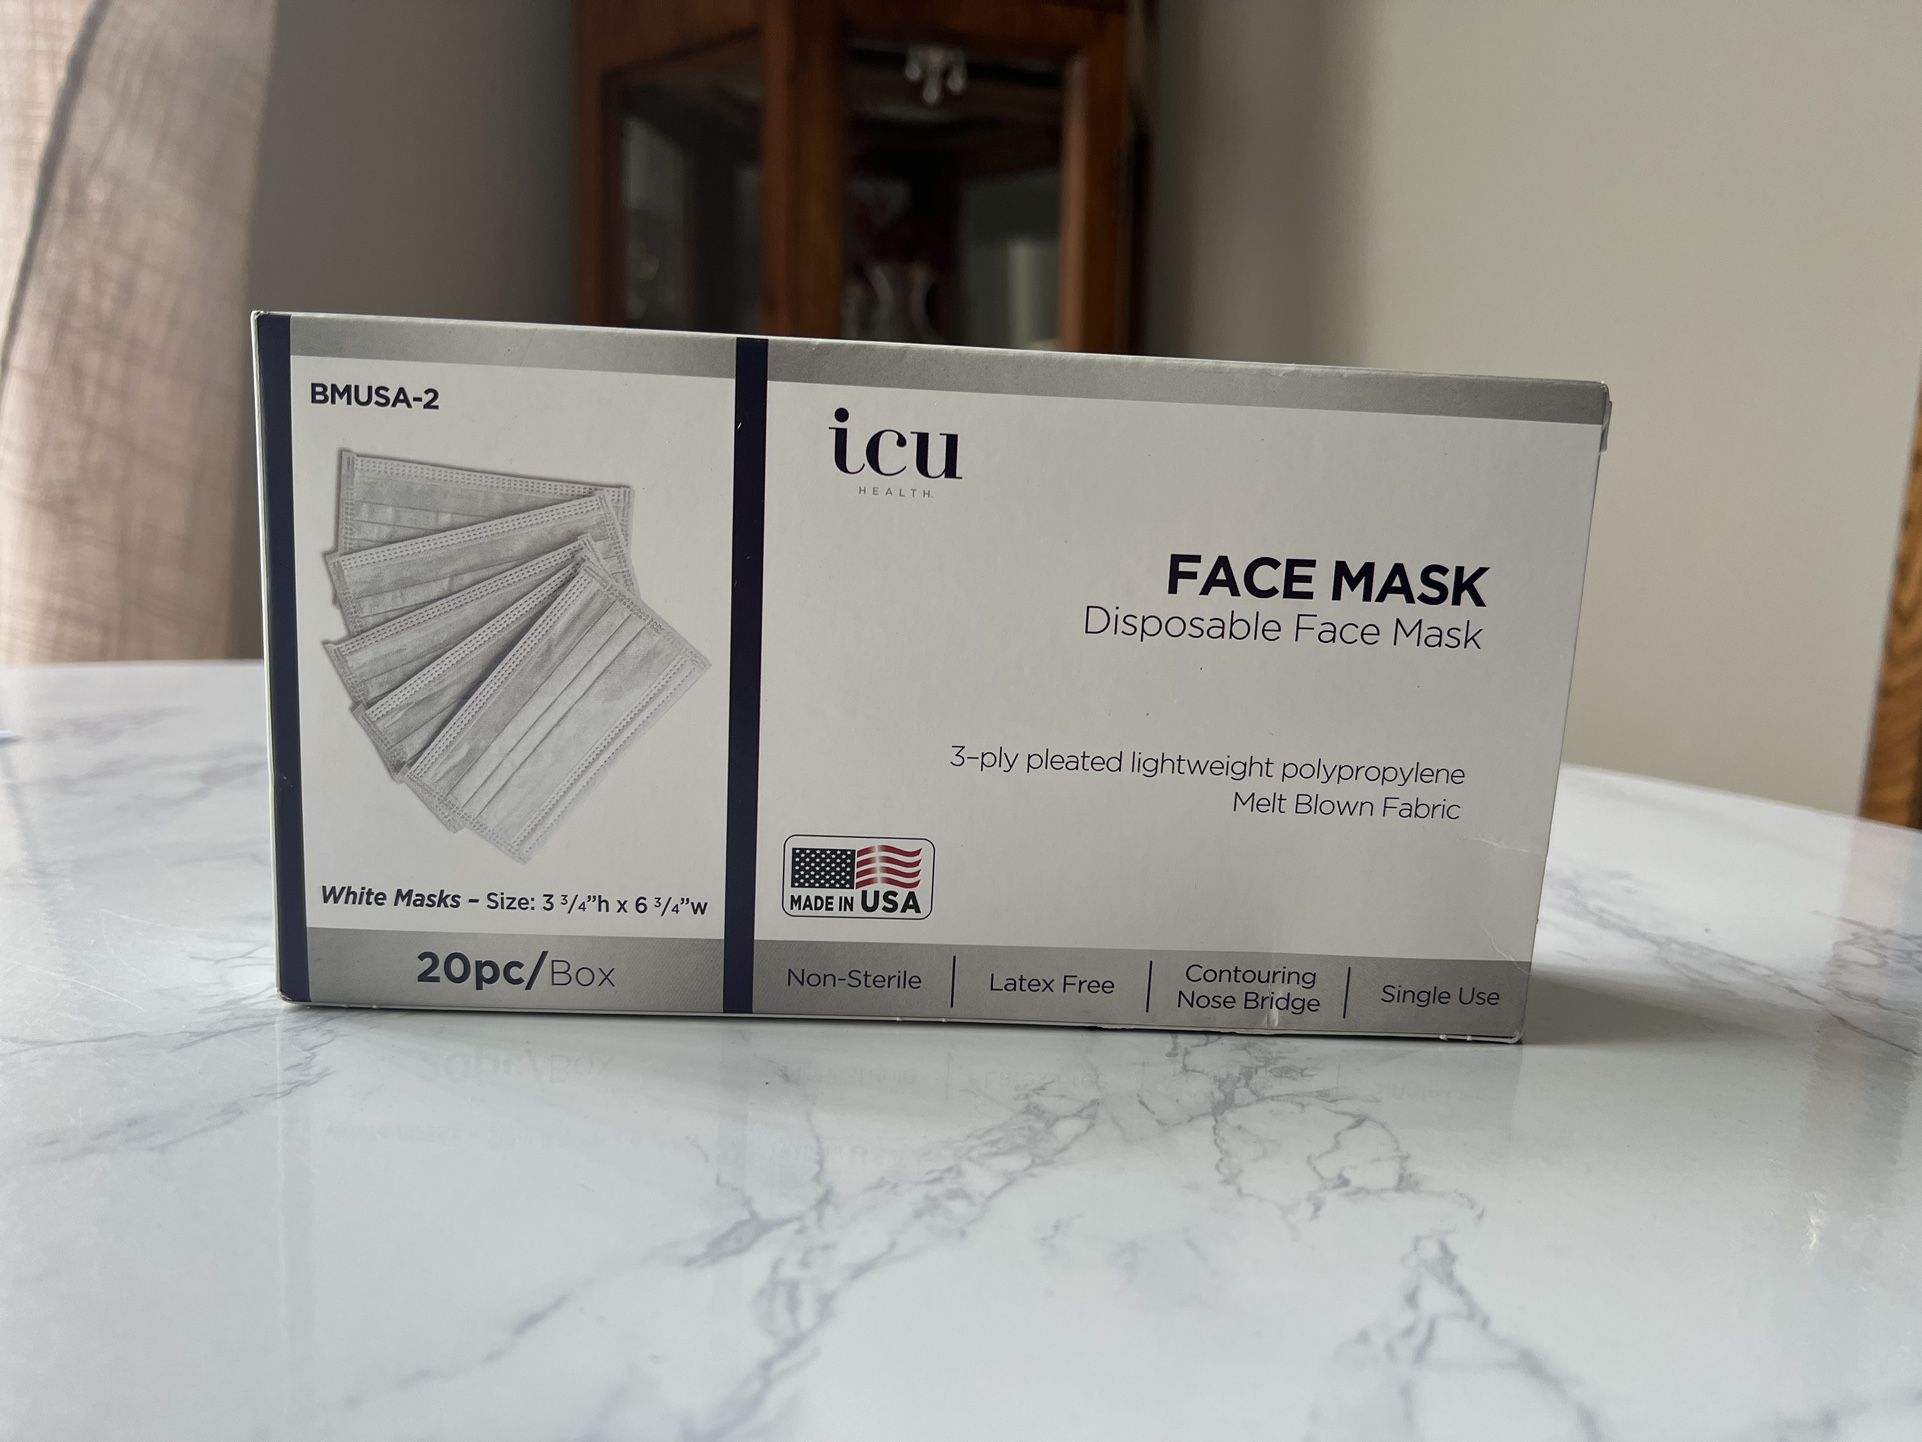 1 Box Of 20 Face Masks - New